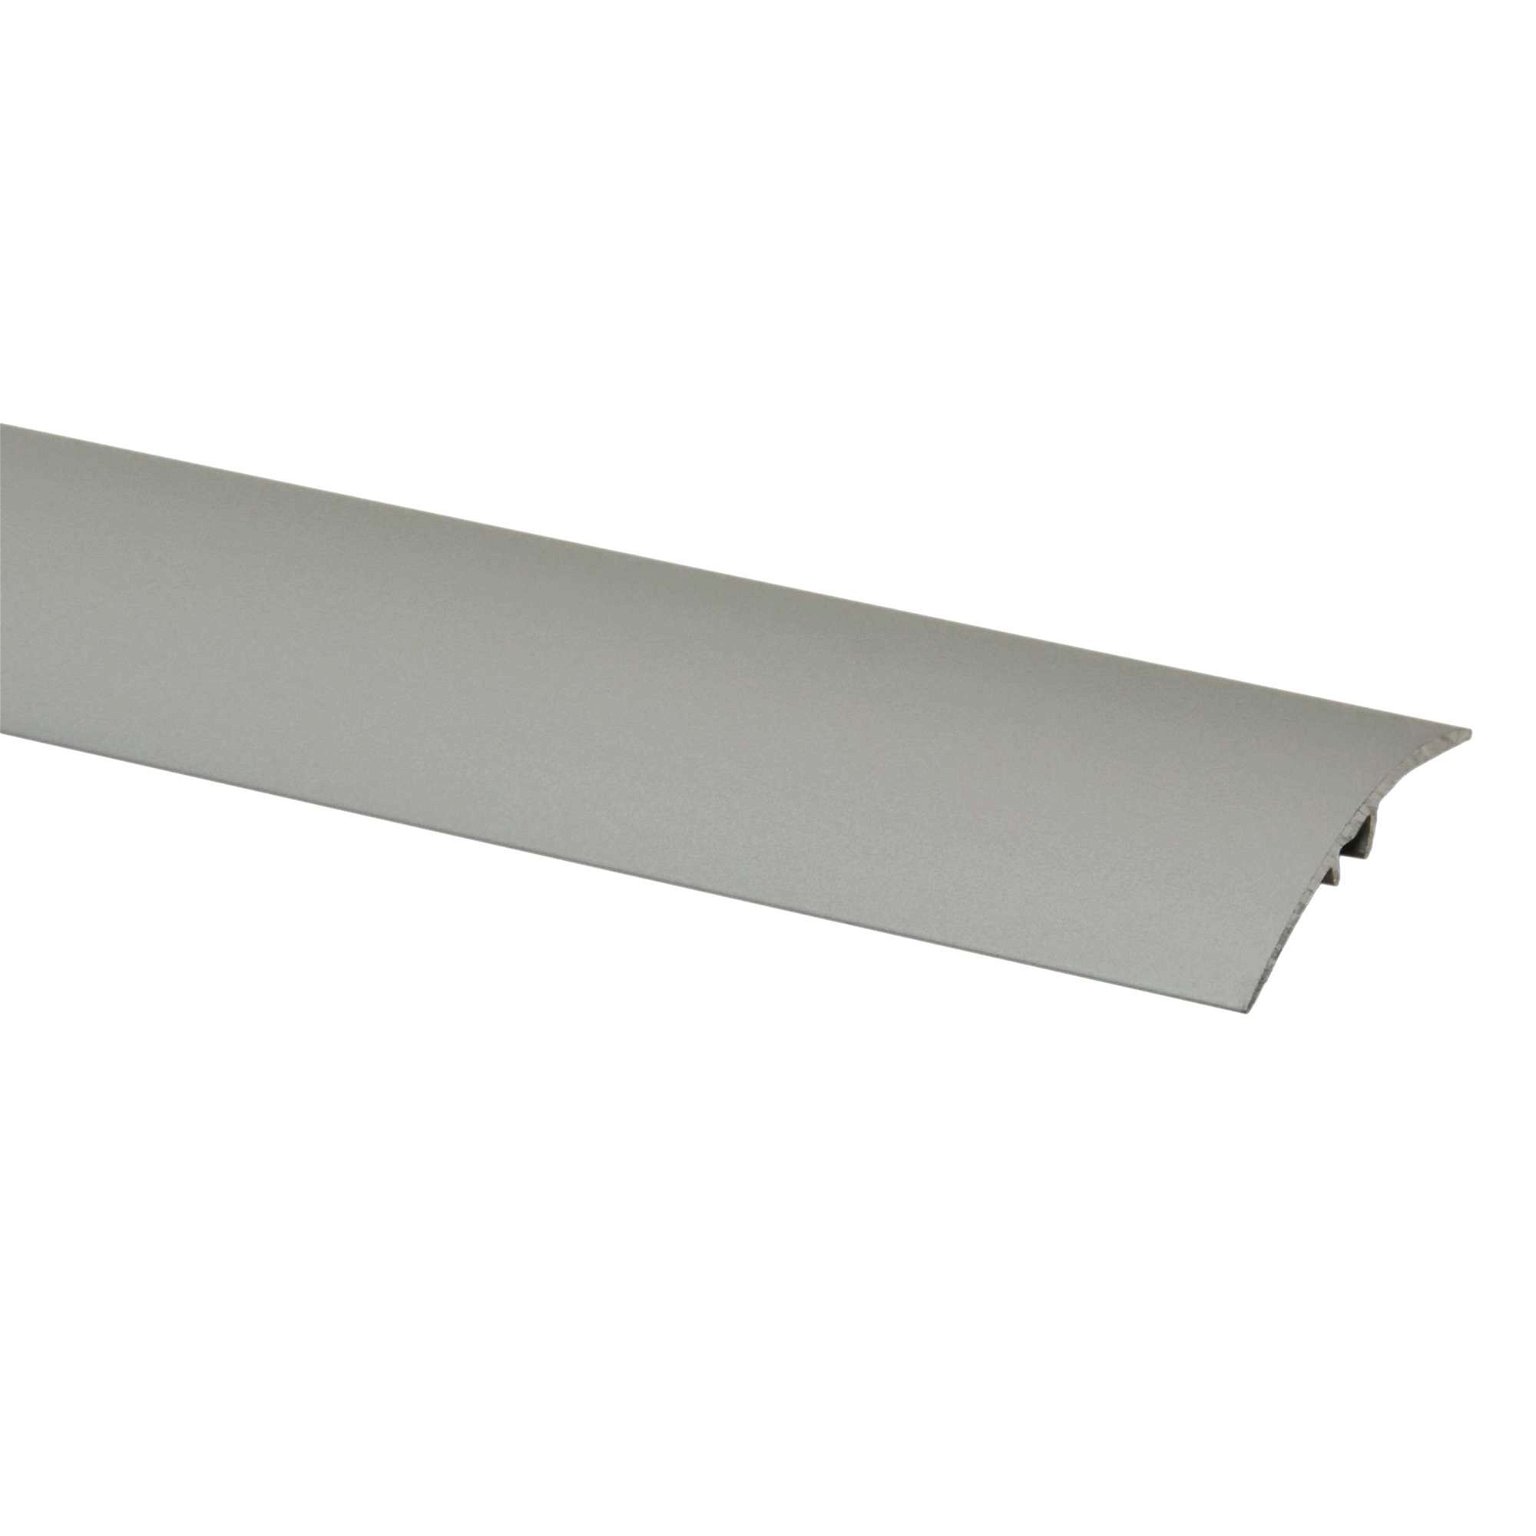 Aliumininė grindų juostelė SM2 A1, sidabro sp., 41 mm pločio, 186 cm ilgio